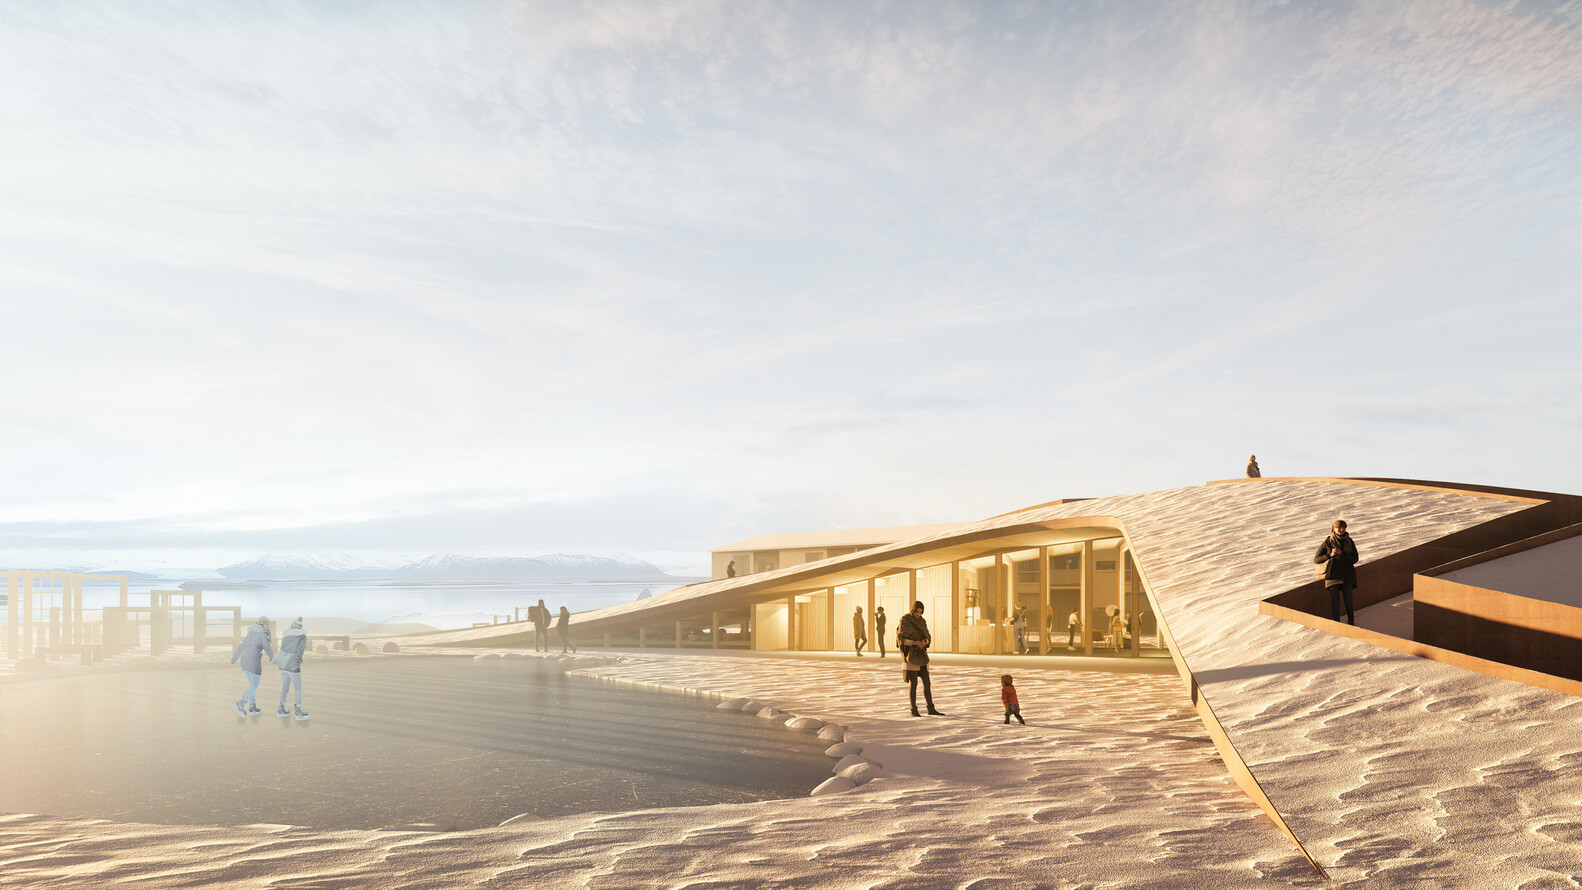 Arquitetos portugueses vencem concurso para criação de um centro comunitário na Islândia